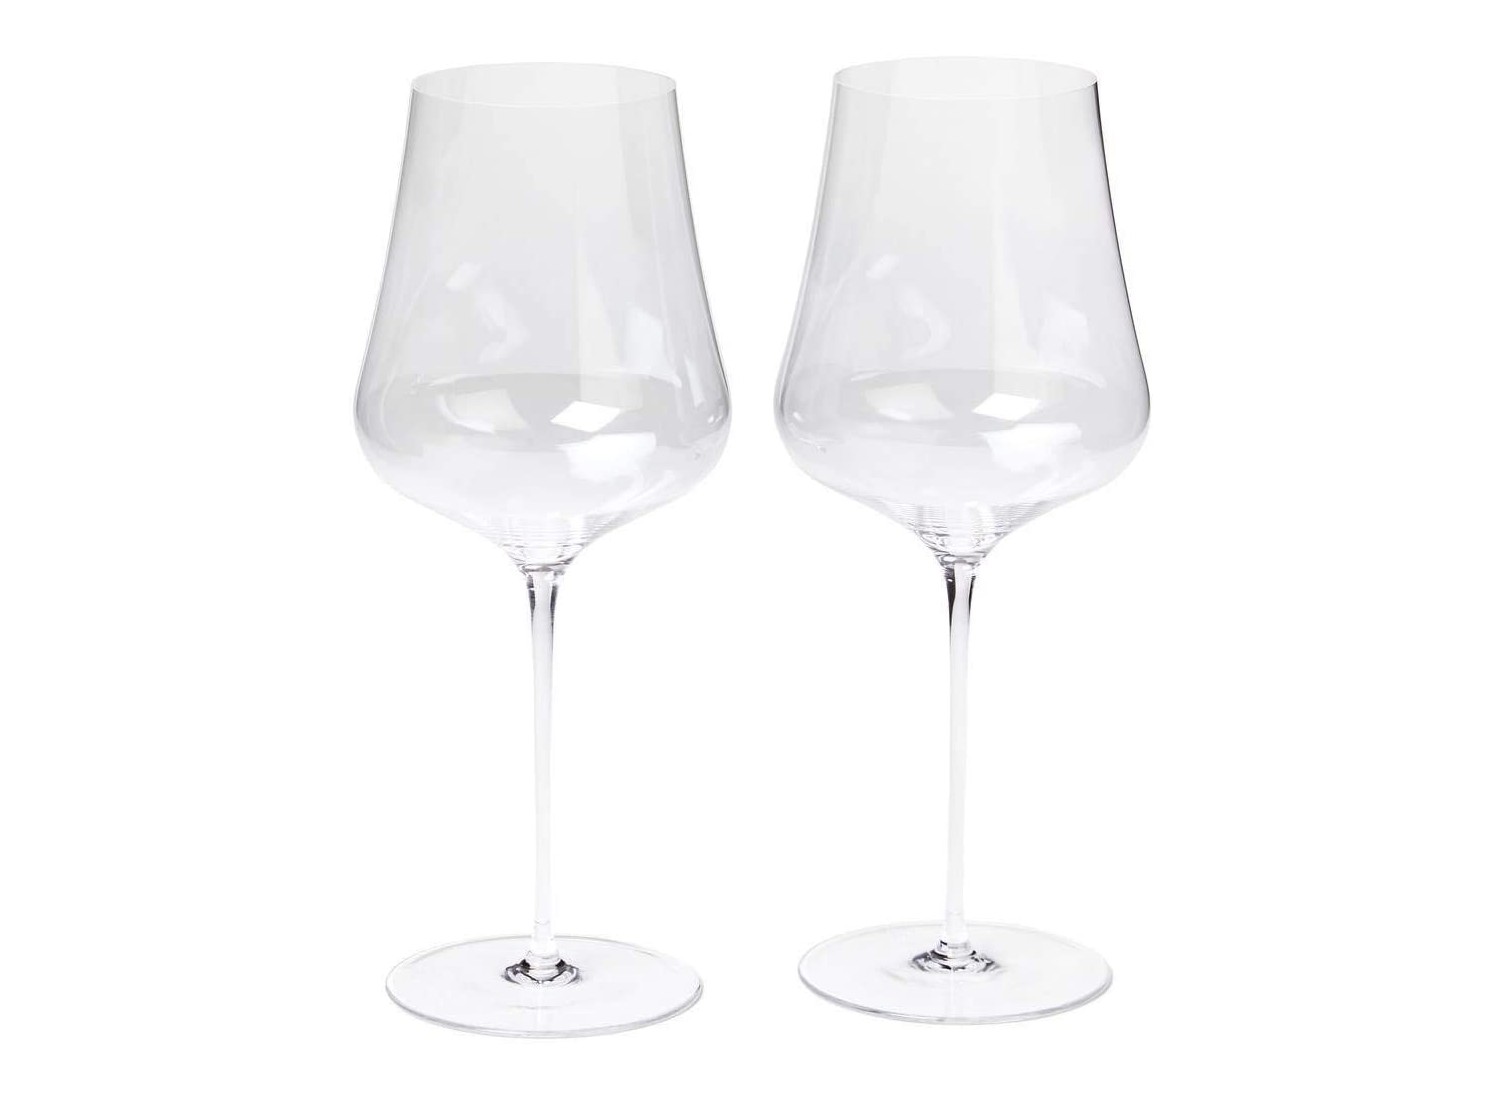 LUNA & MANTHA Stemless Wine Glasses Set of 4, Crystal